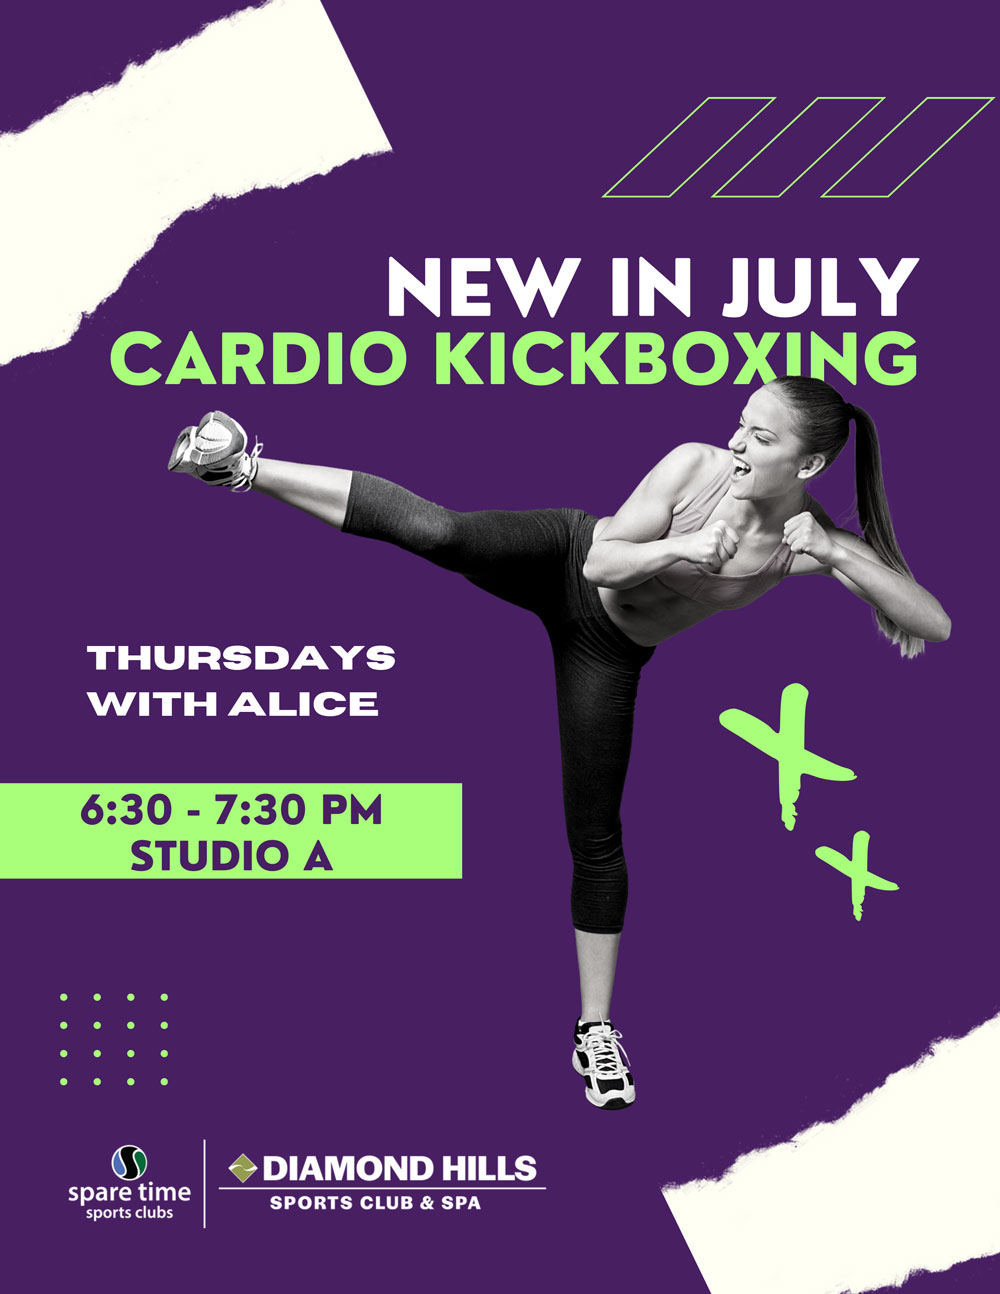 Cardio kickboxing new in july, Oakley, CA